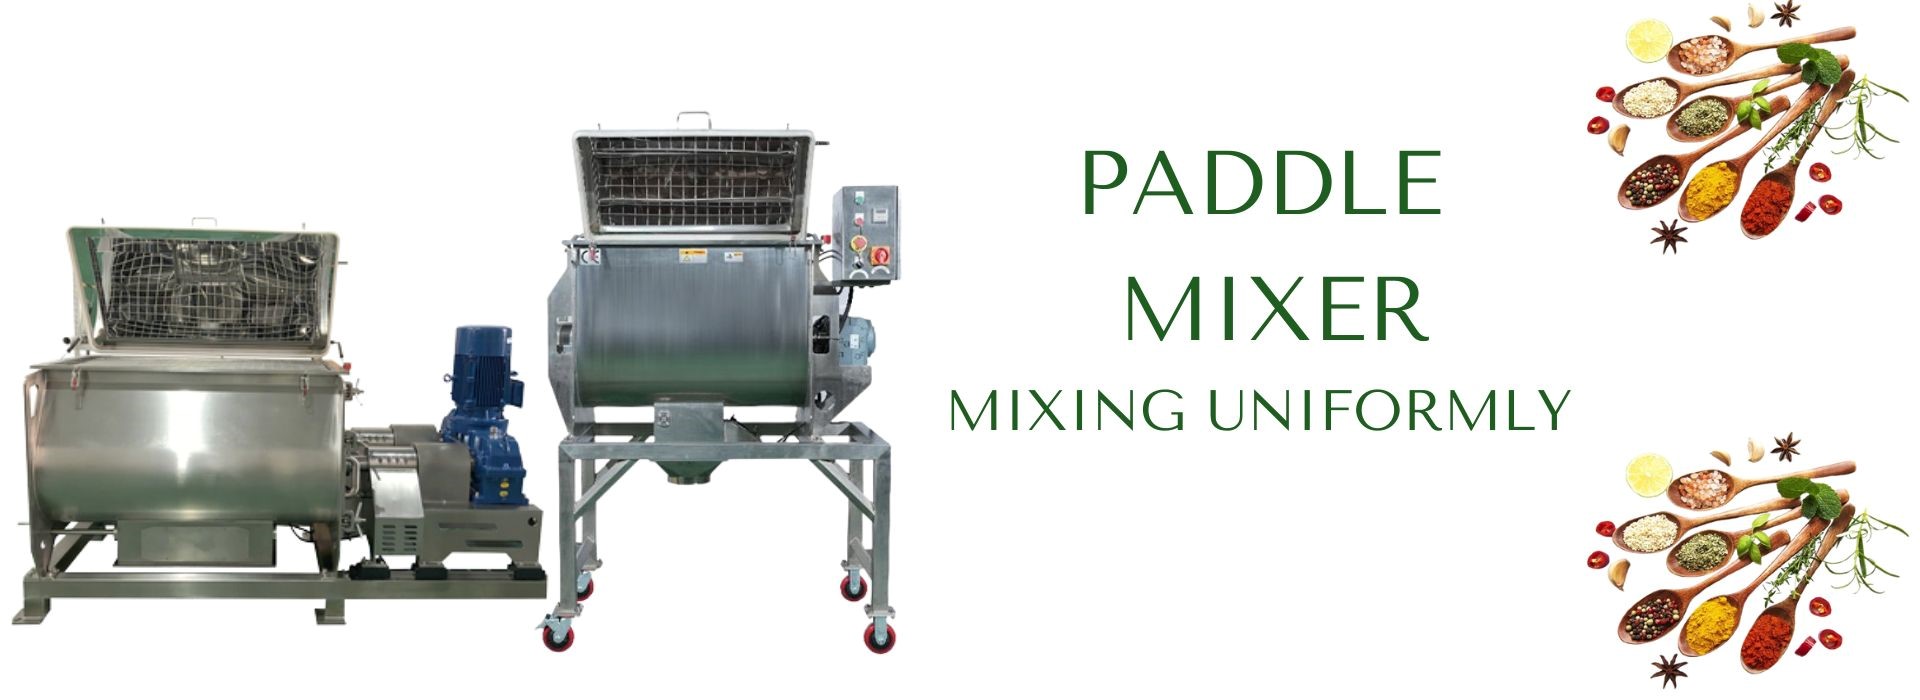 Ki sa ki se Paddle Mixer Design1